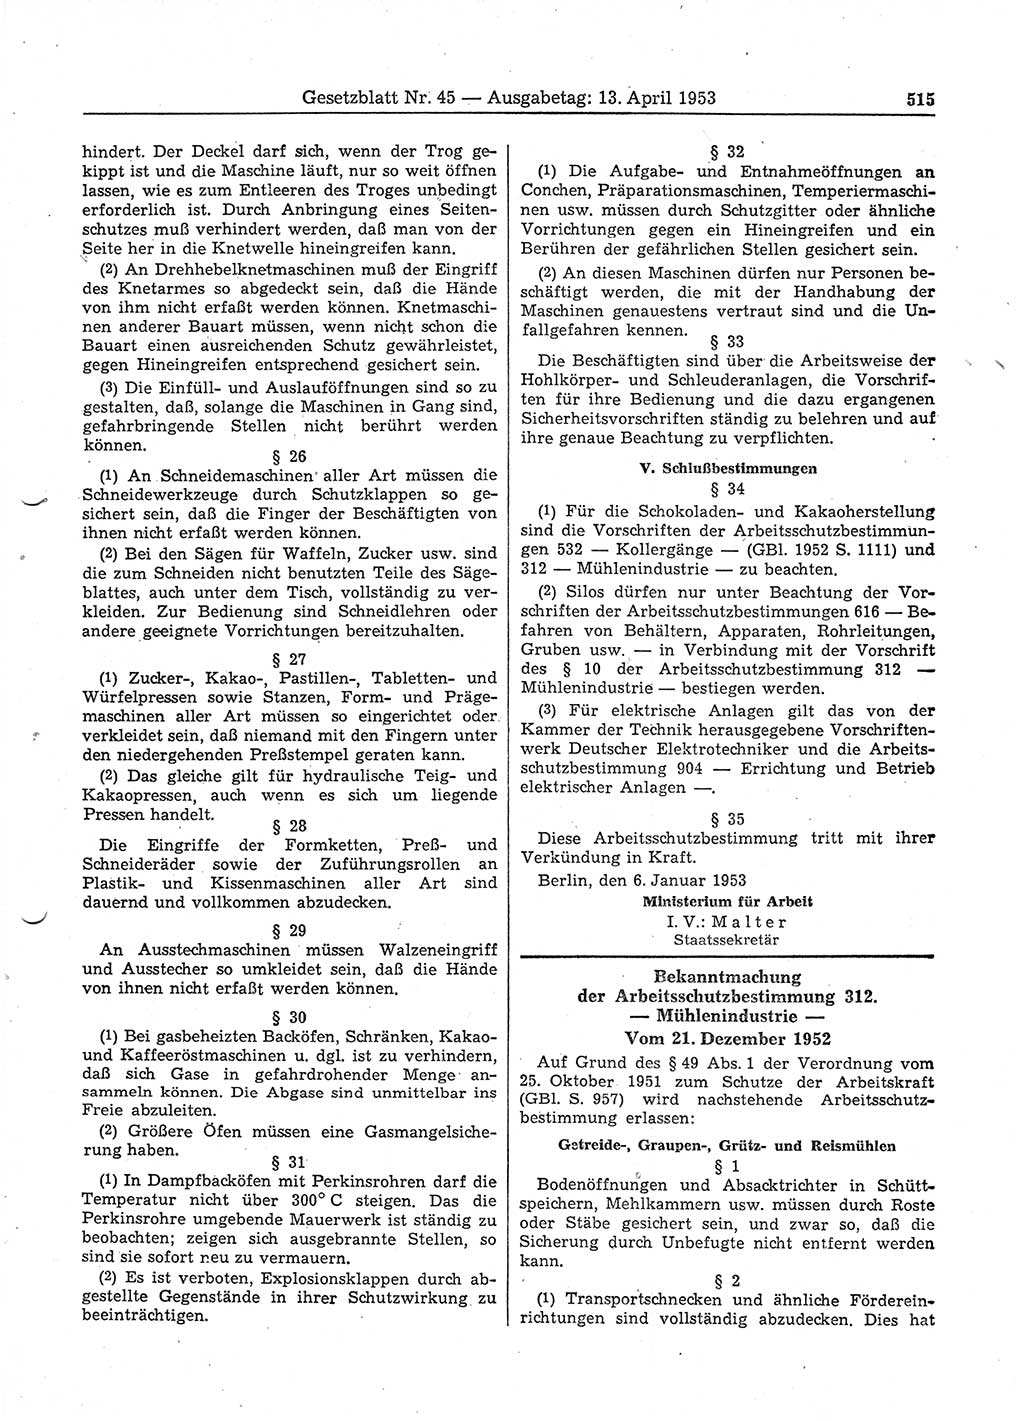 Gesetzblatt (GBl.) der Deutschen Demokratischen Republik (DDR) 1953, Seite 515 (GBl. DDR 1953, S. 515)